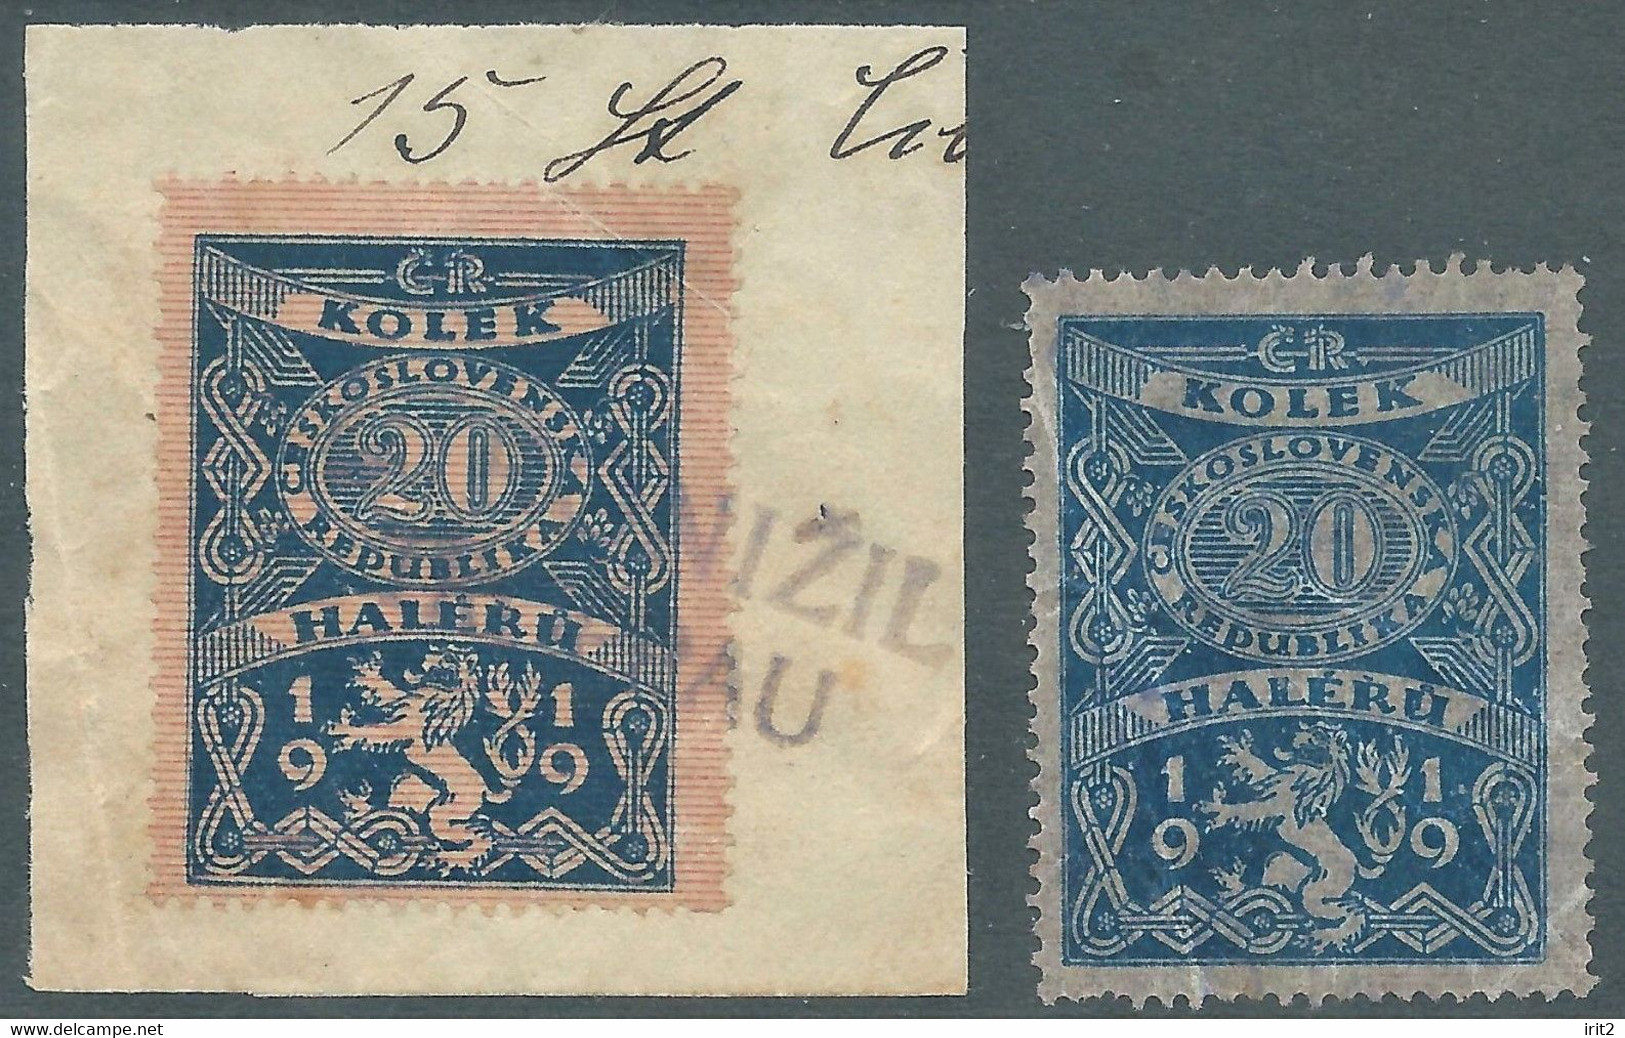 Czechoslovakia - CECOSLOVACCHIA.1919 Revenue Stamps Tax Fiscal,Kolek 20 Haleru,Used - Dienstmarken